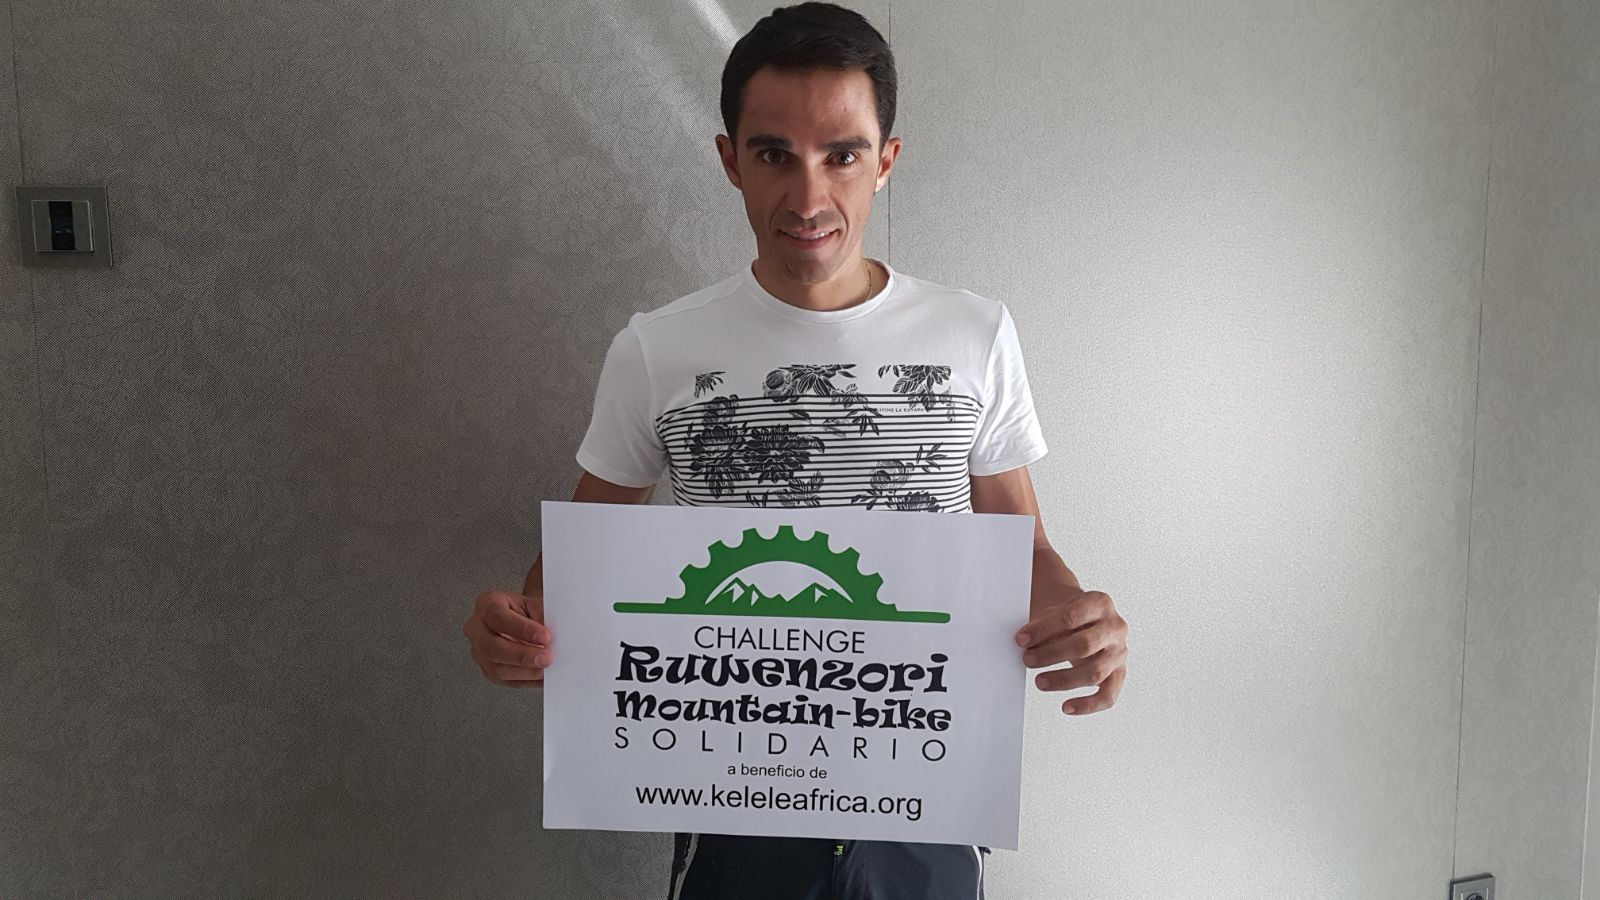 El ciclista Alberto Contador con un cartel del Challenge Ruwenzori Mountain-bike Solidario